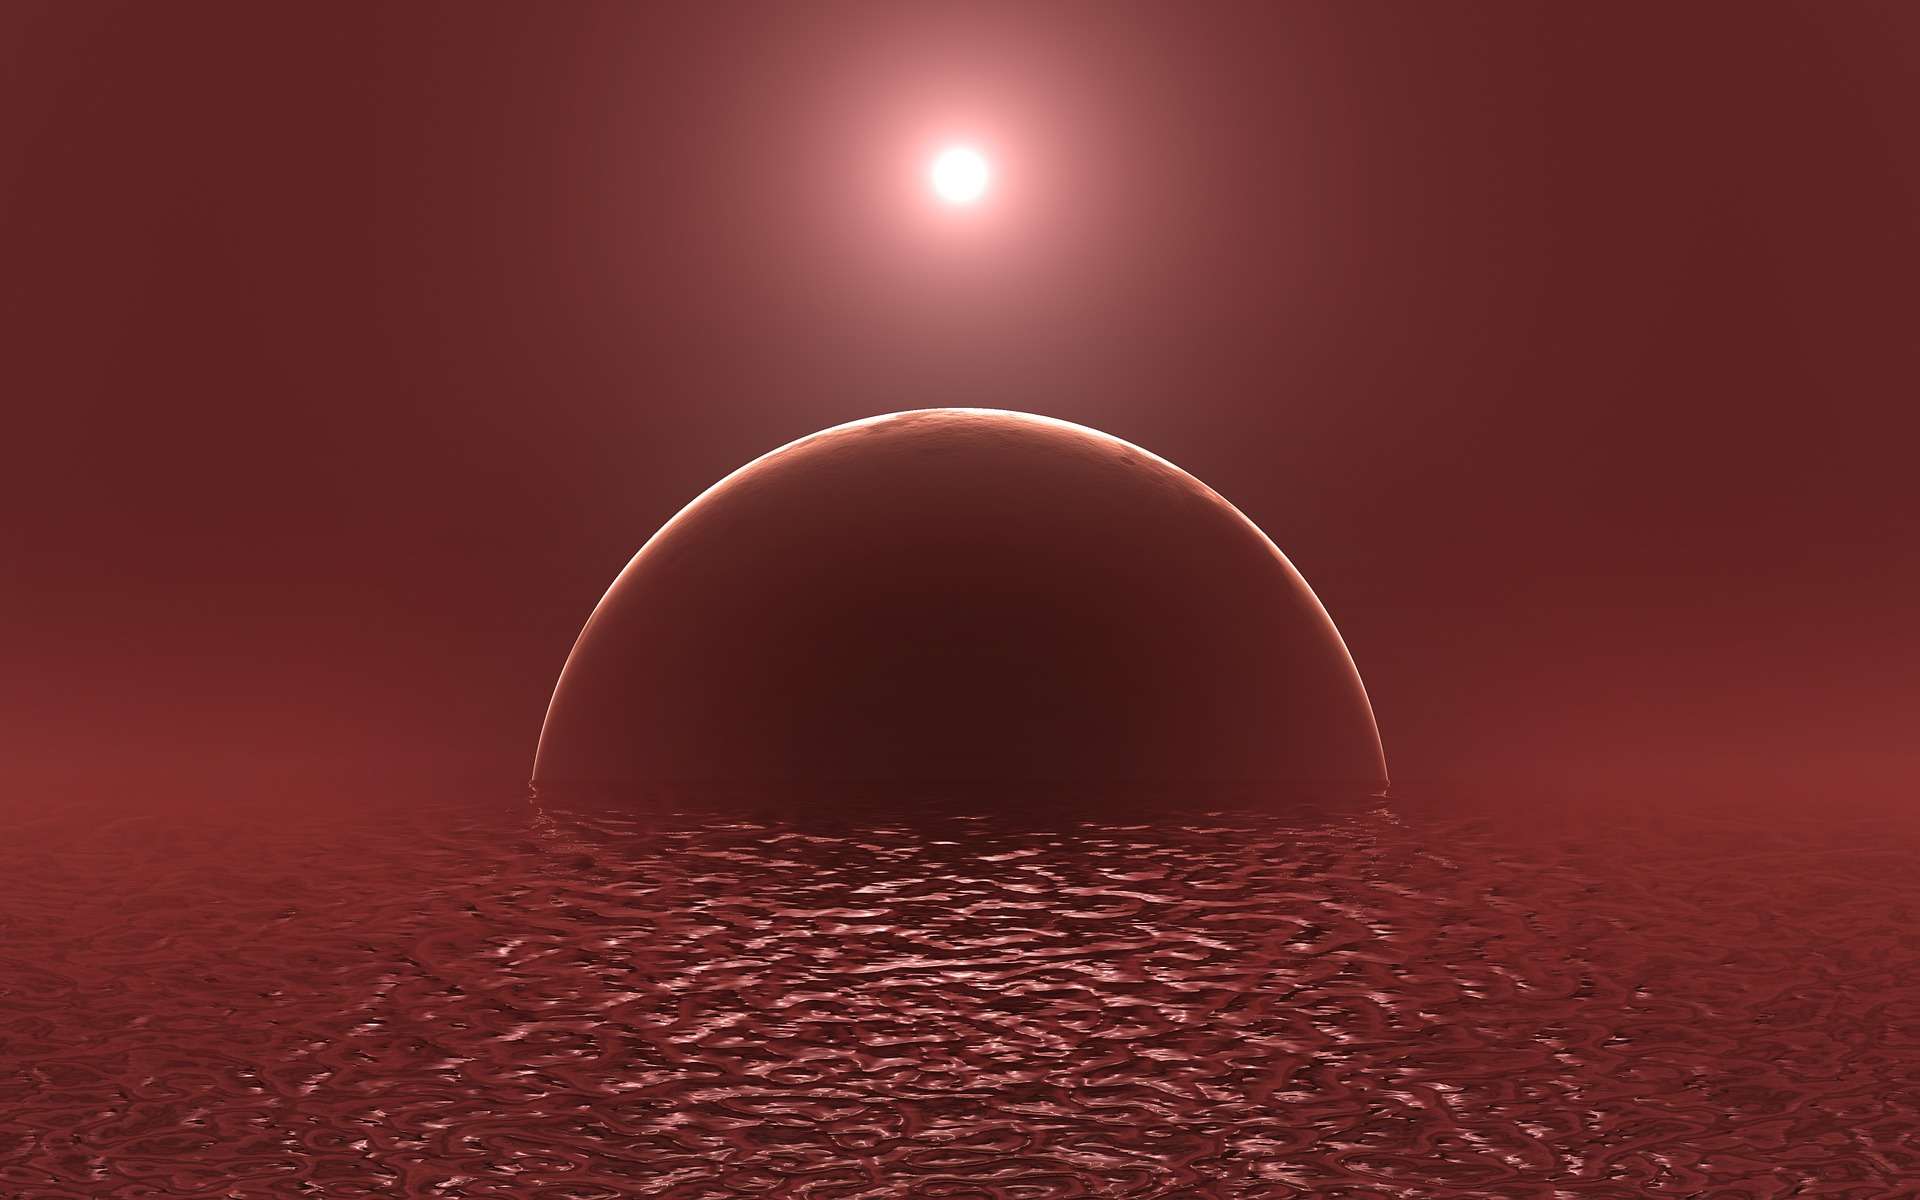 Lunar Eclipse, Mars